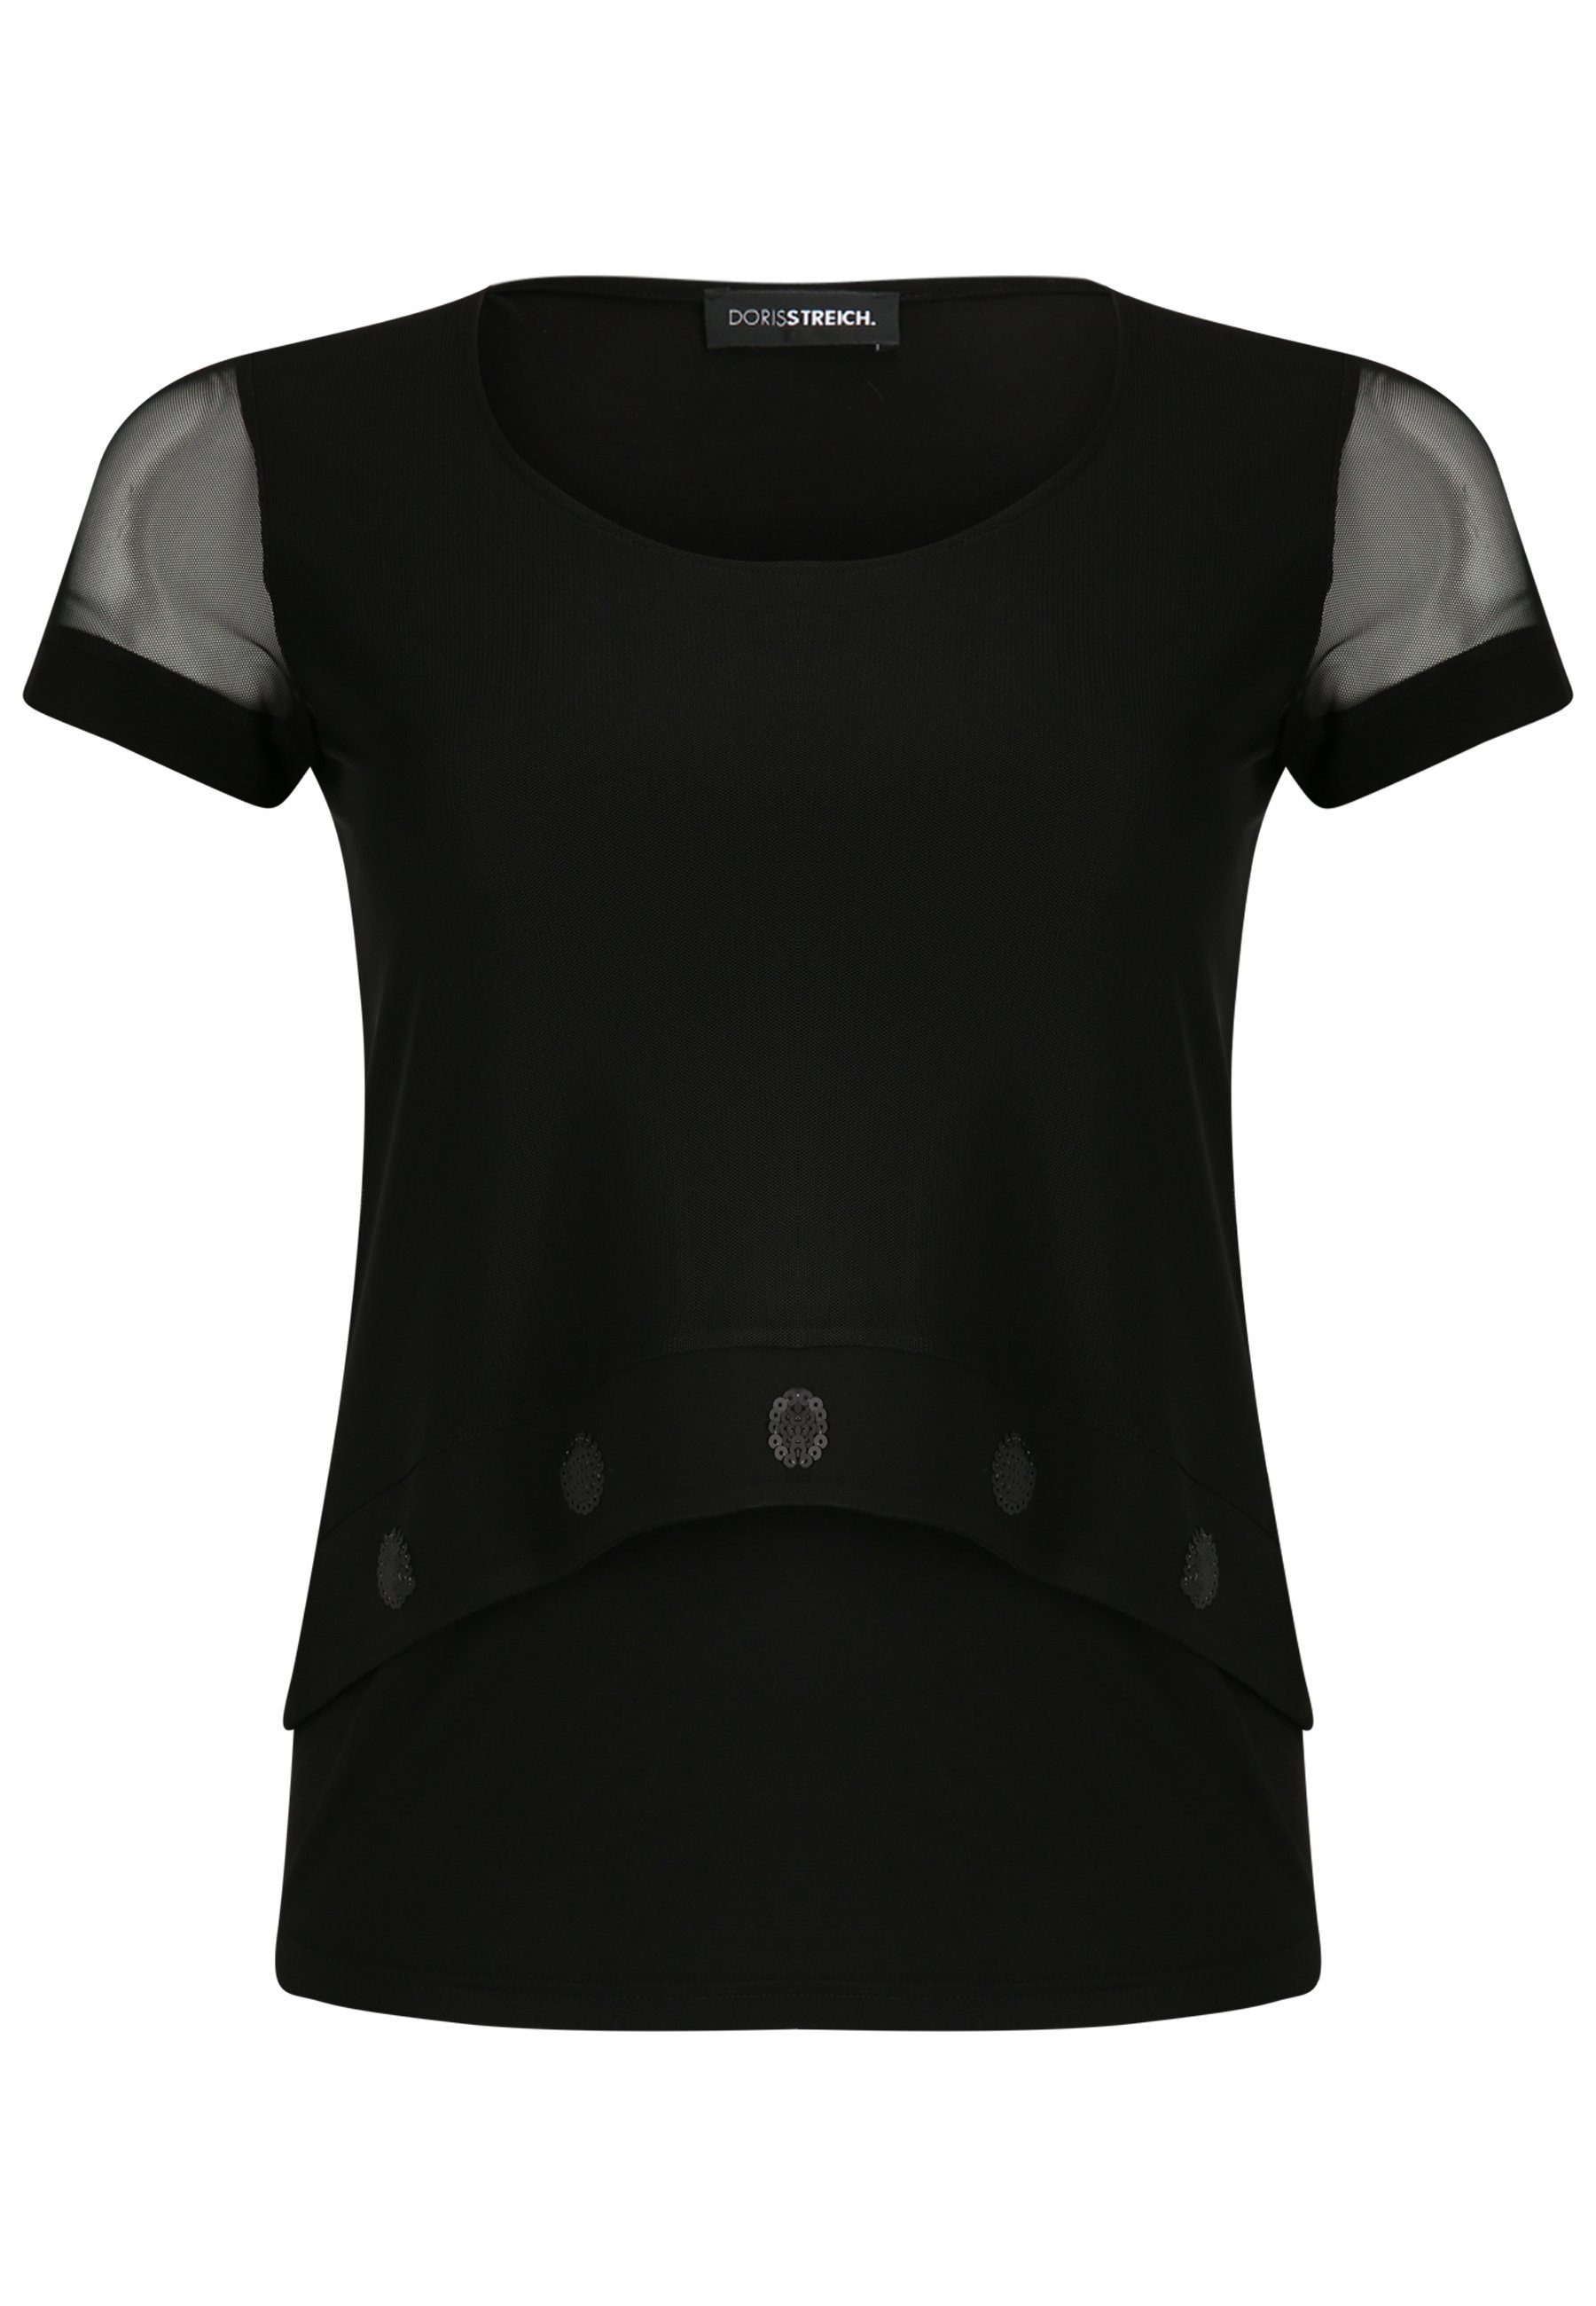 Doris Streich T-Shirt mit transparenten Ärmeln mit modernem Design